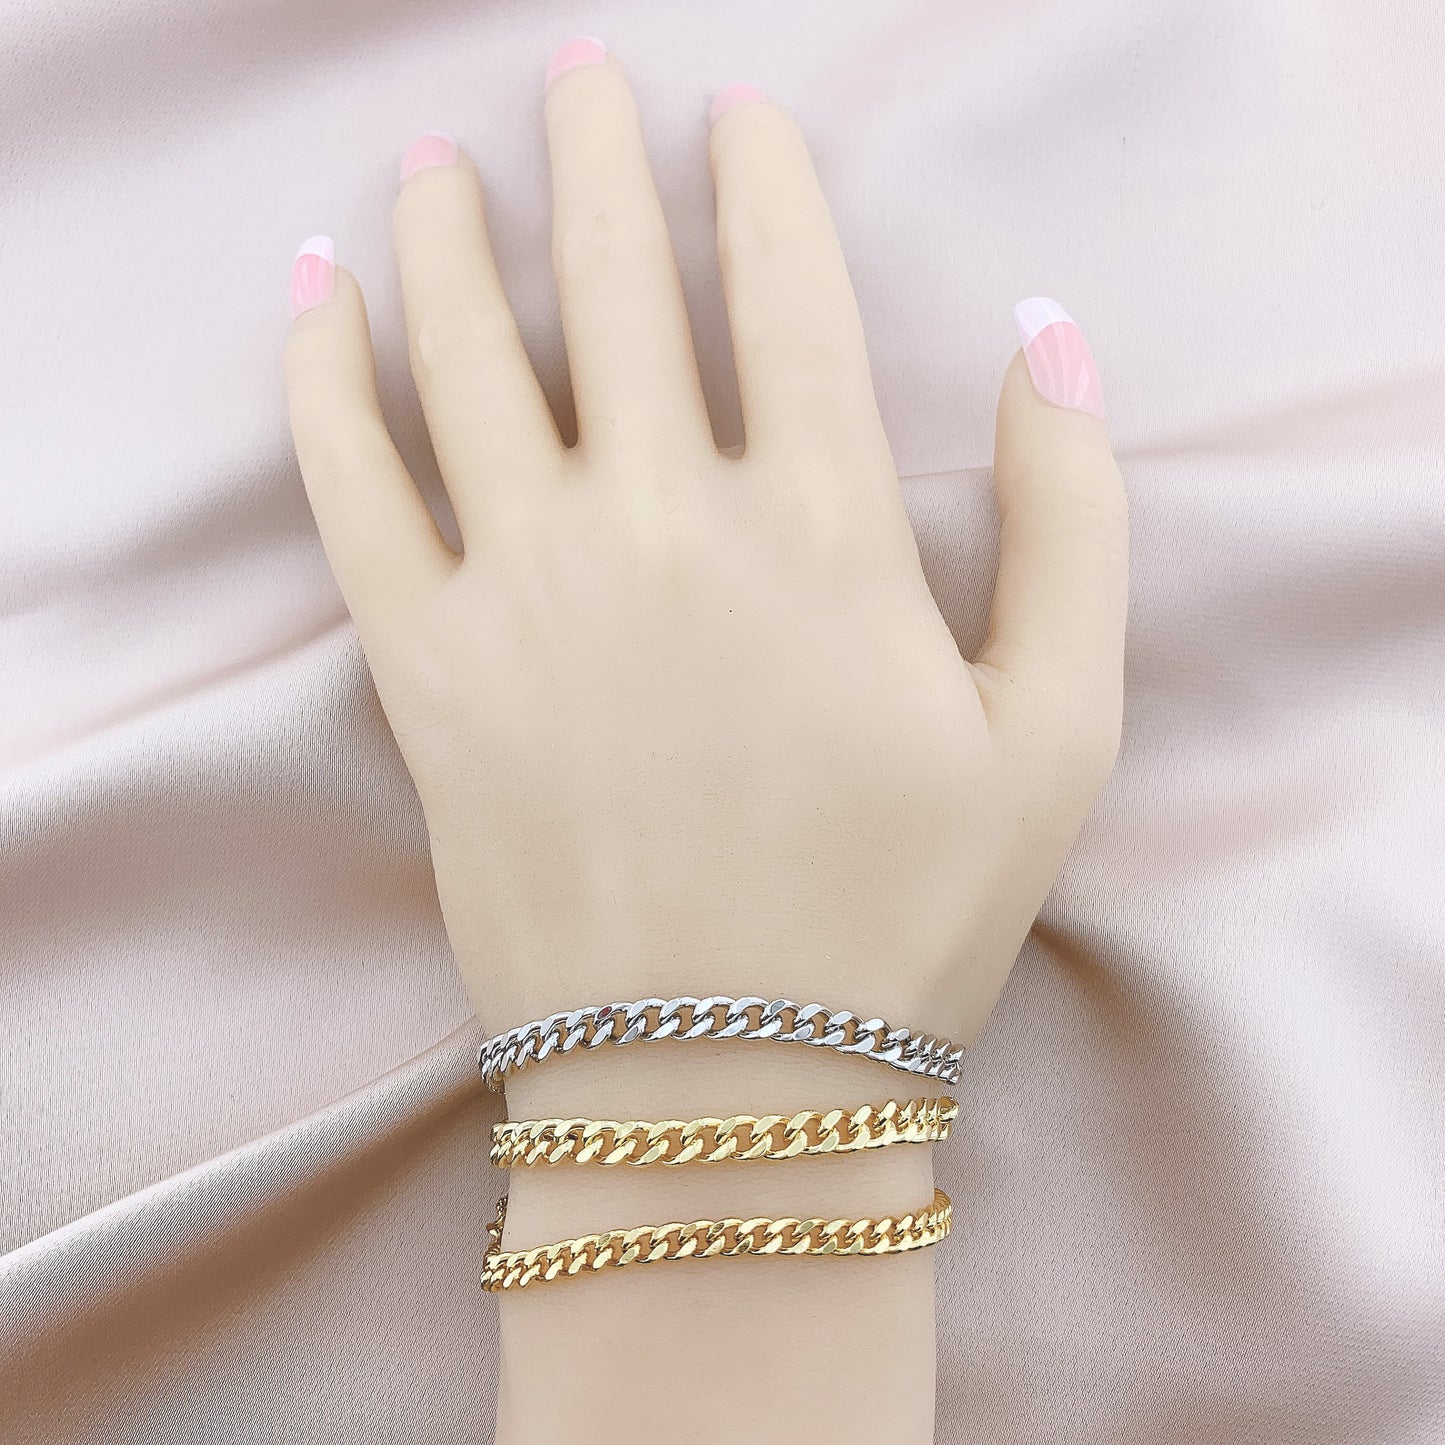 Women's Fashion Adjustable Bolo Chain Bracelet